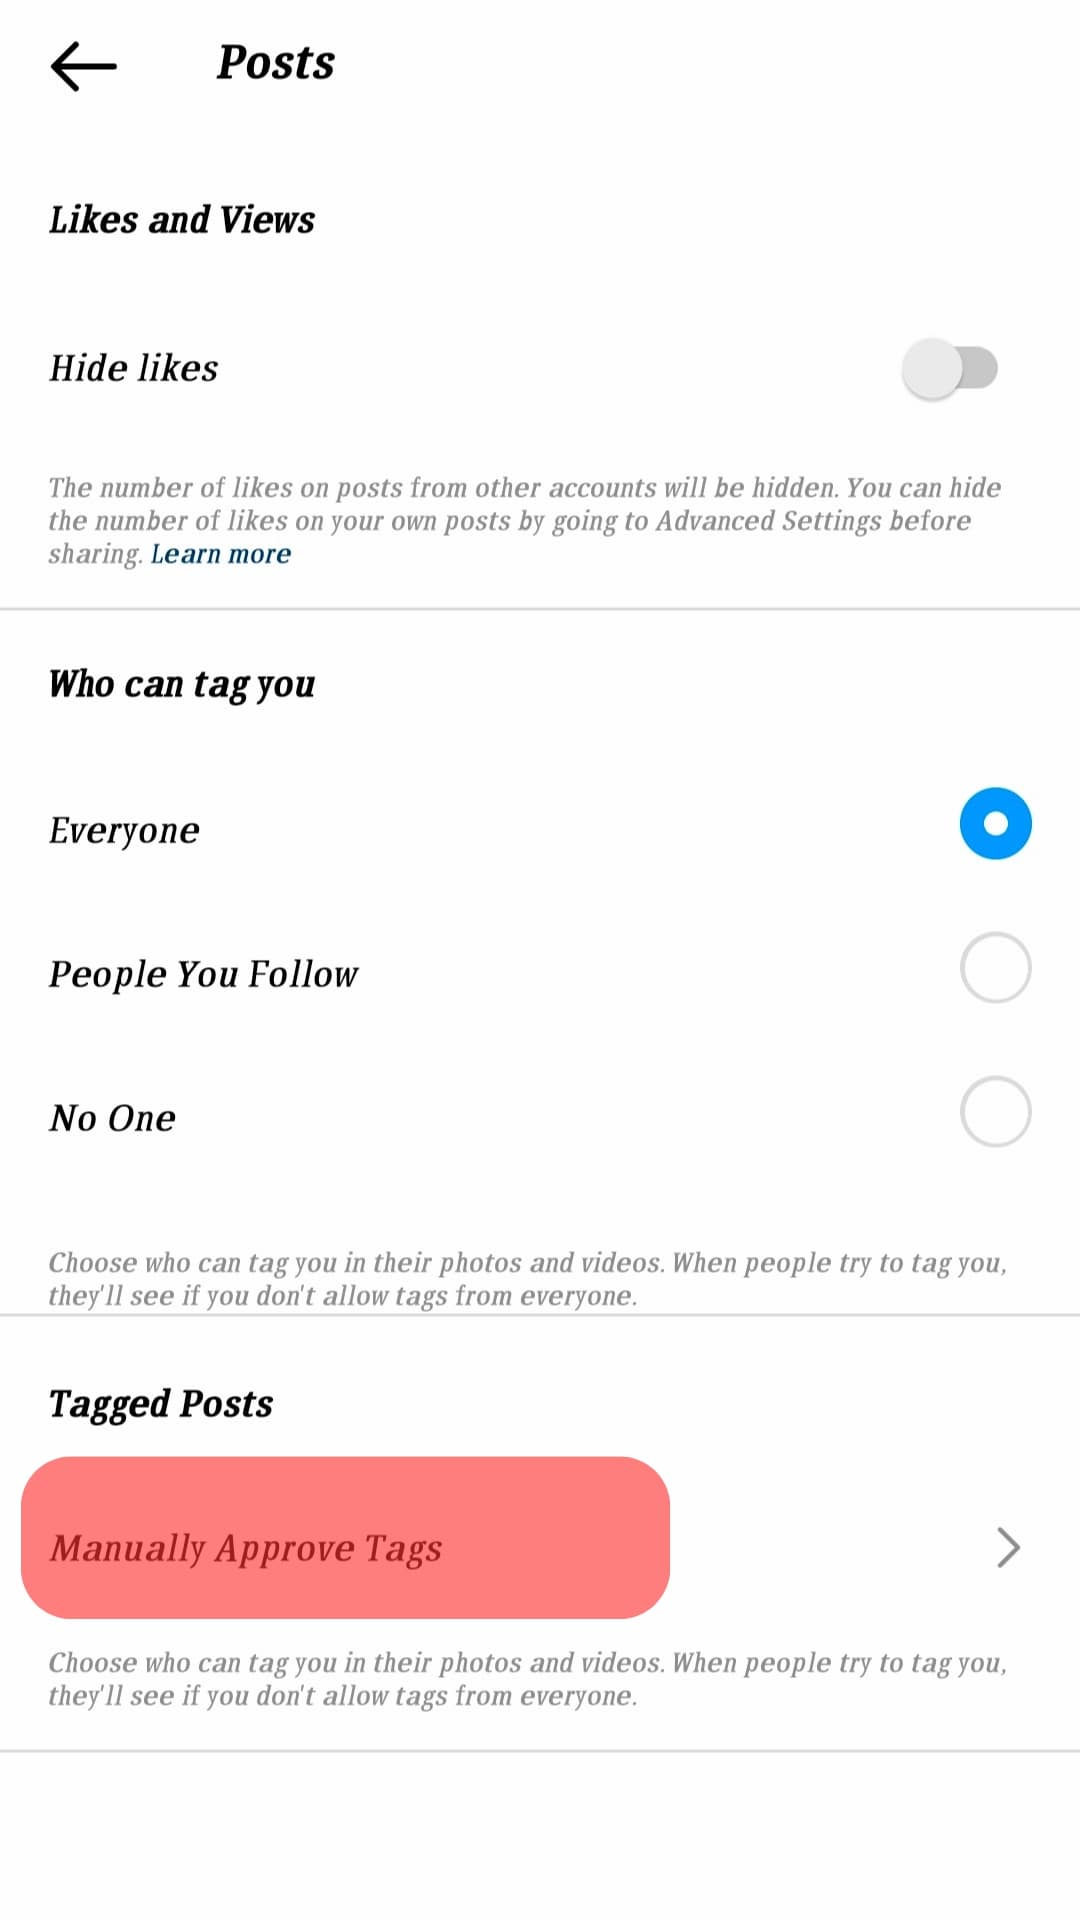 Cómo aprobar etiquetas en Instagram?